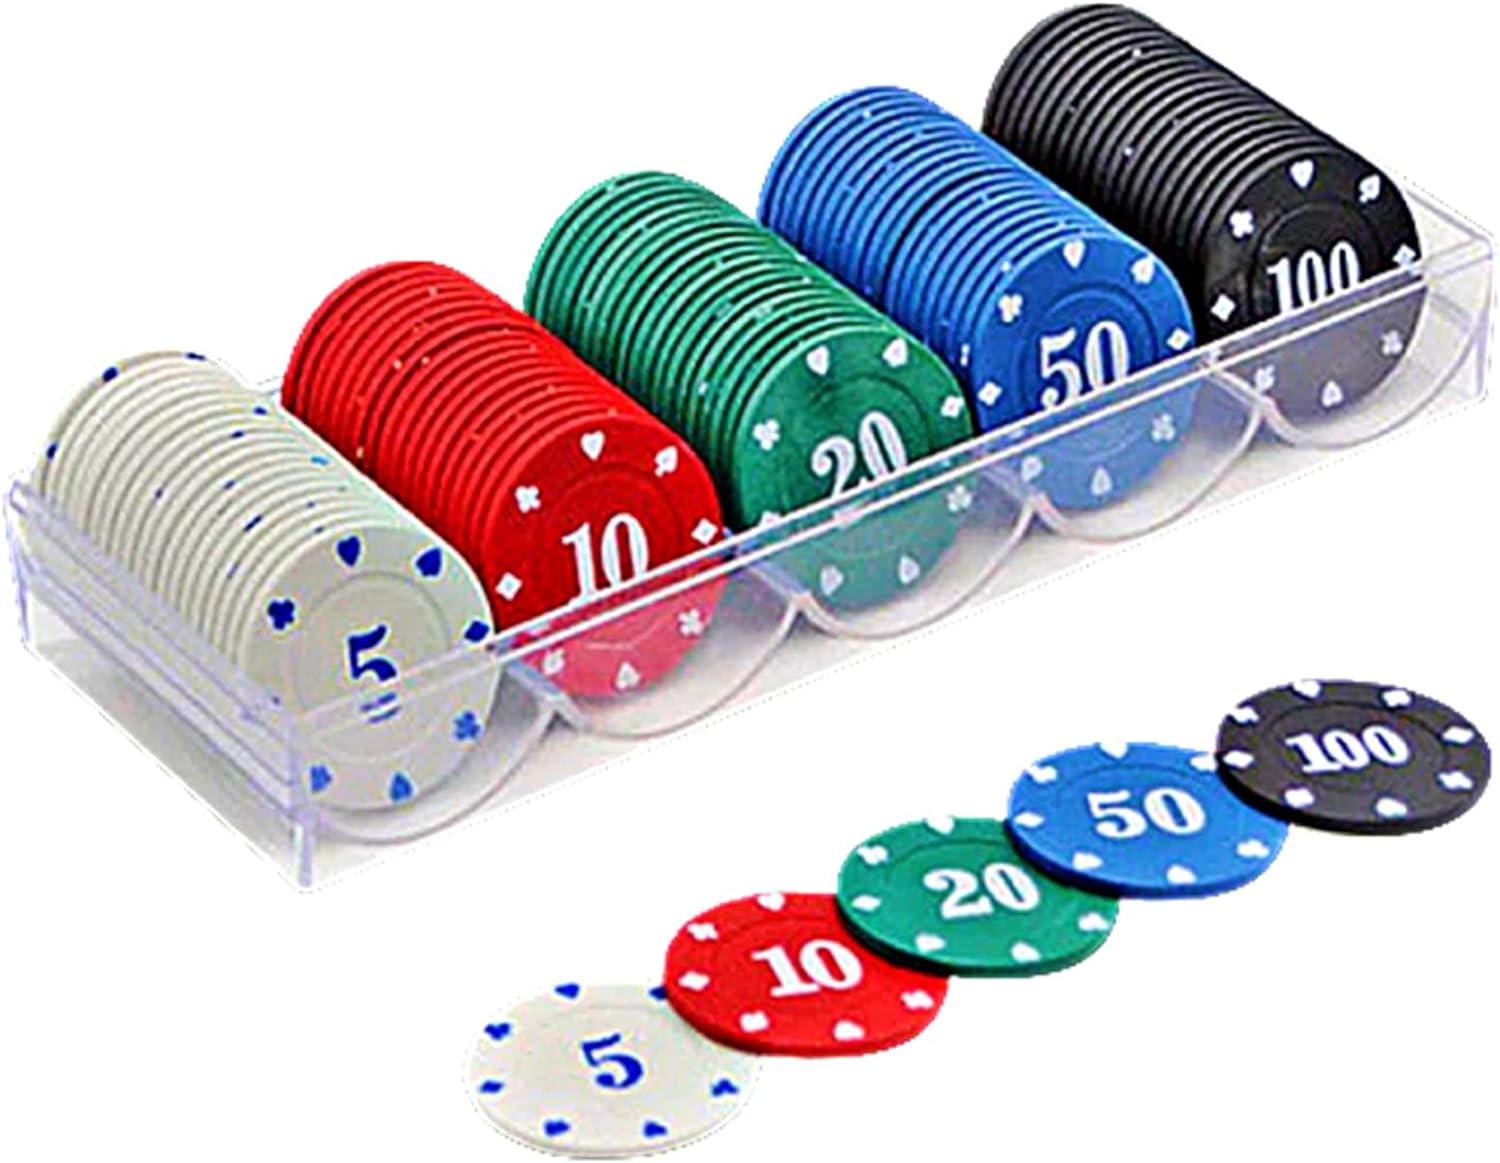 heizi カジノチップセット 100枚 カジノコイン アクリルケース付 ポーカー ブラックジャック テーブルゲーム (5色セット)画像